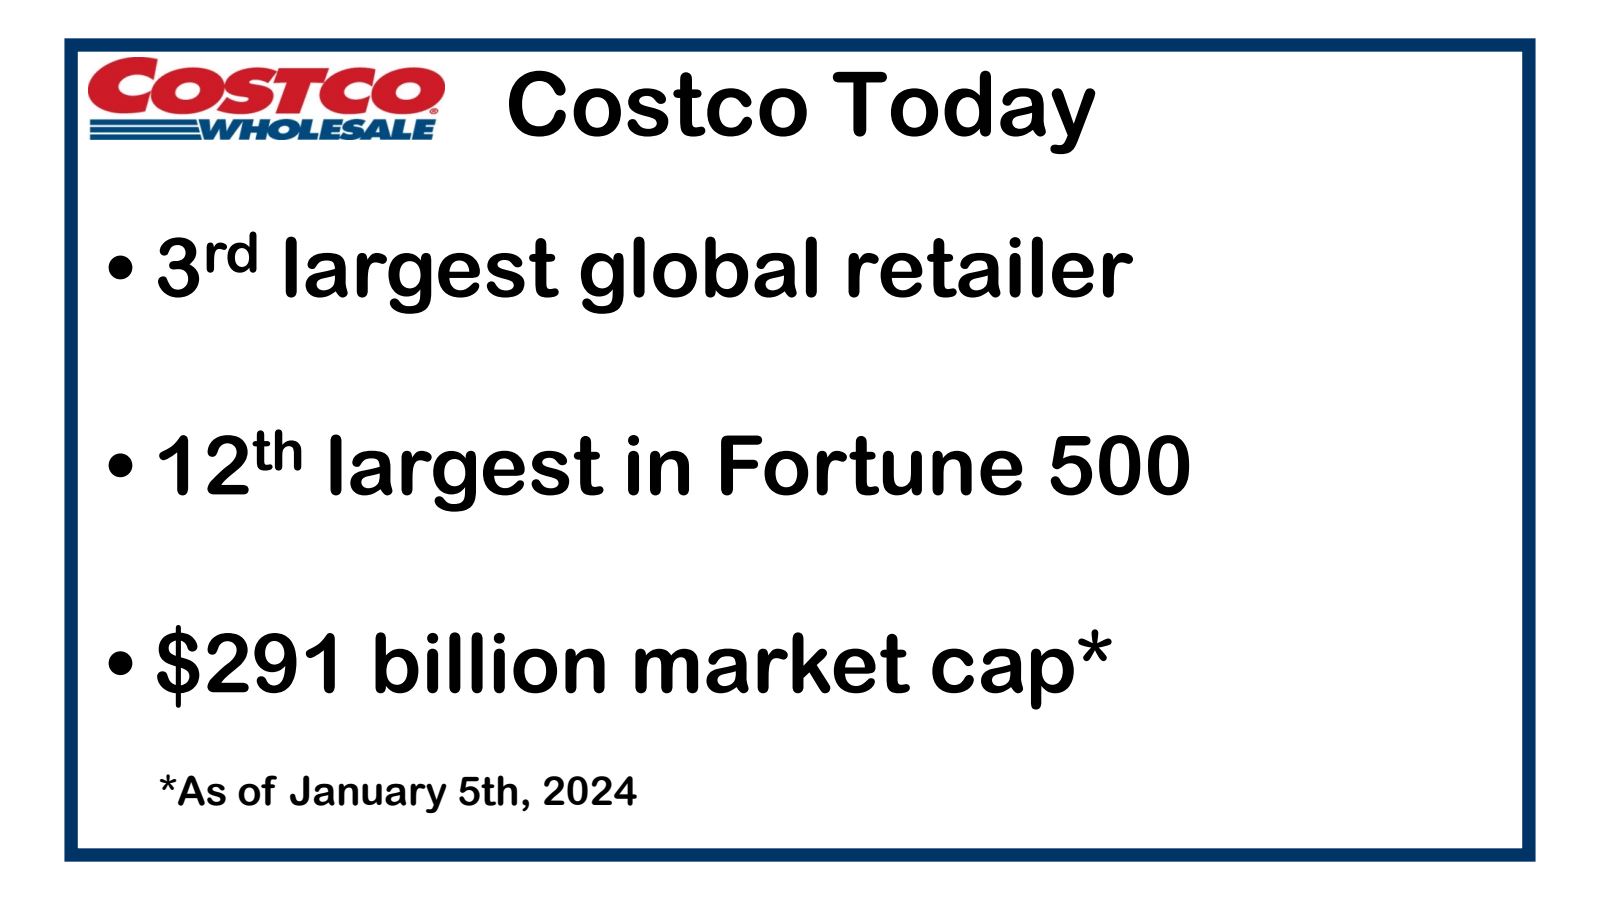 COSTCO Costco Today 